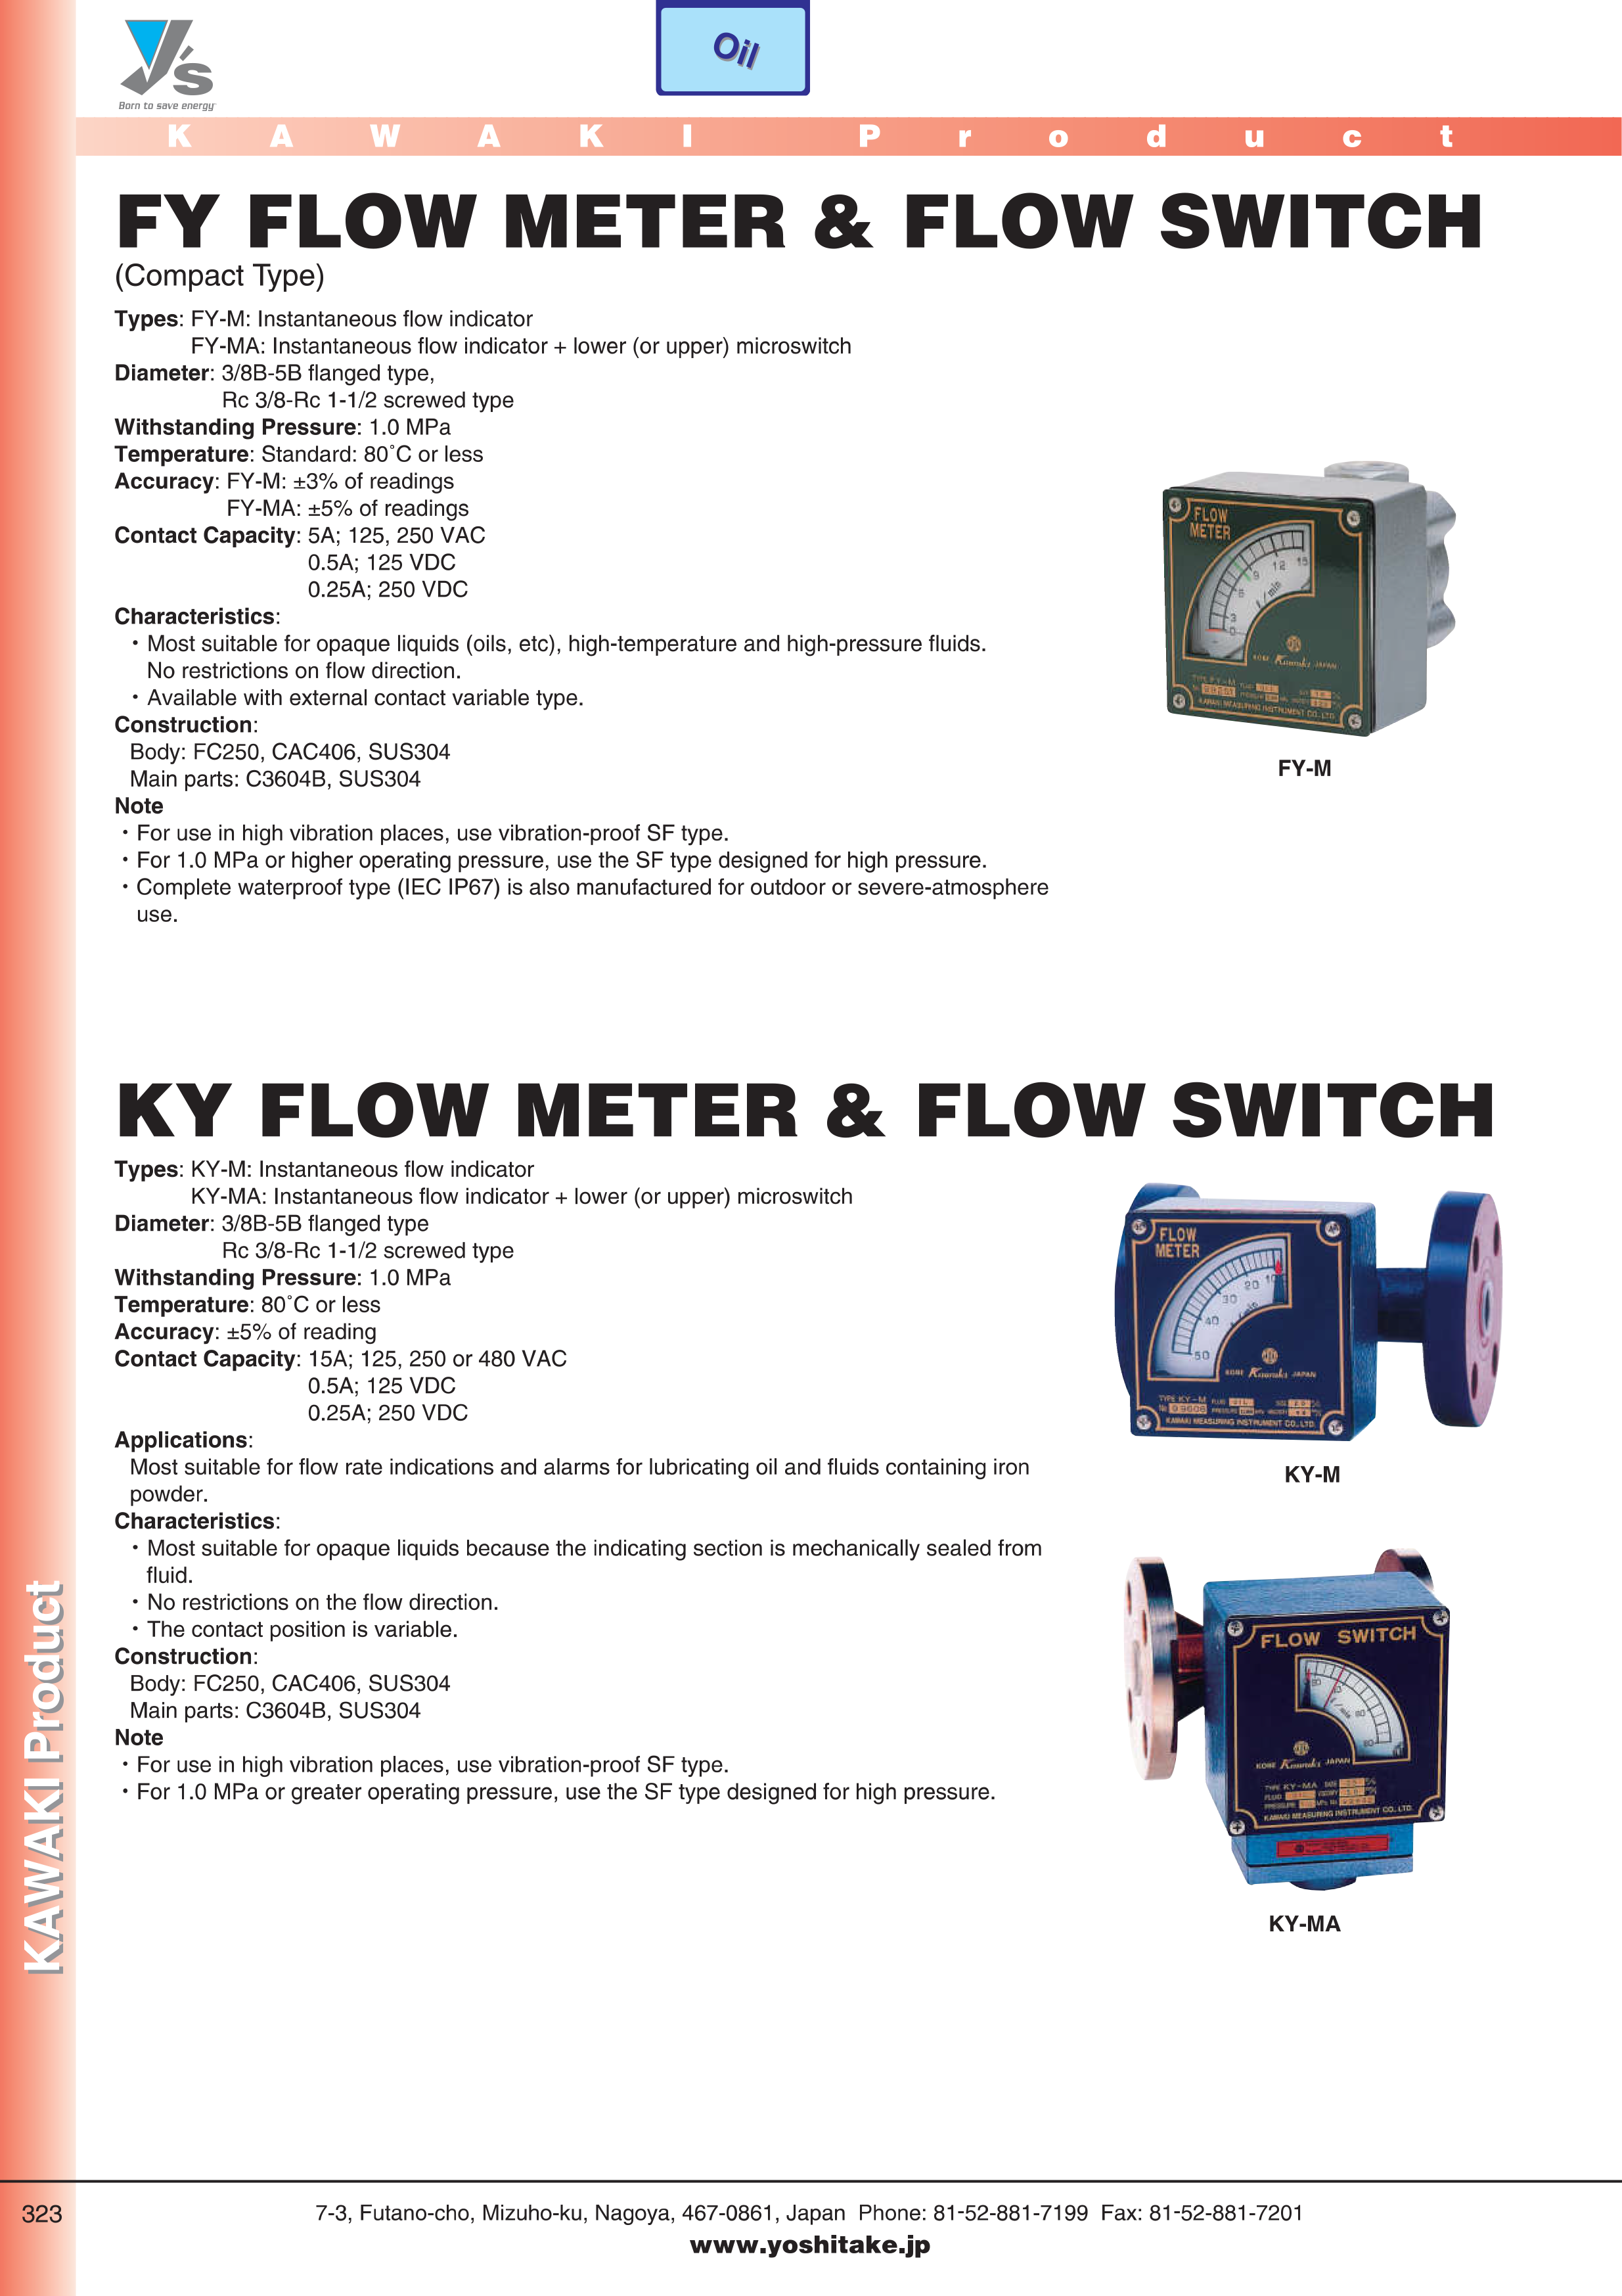 kawaki flow switch & flow meter